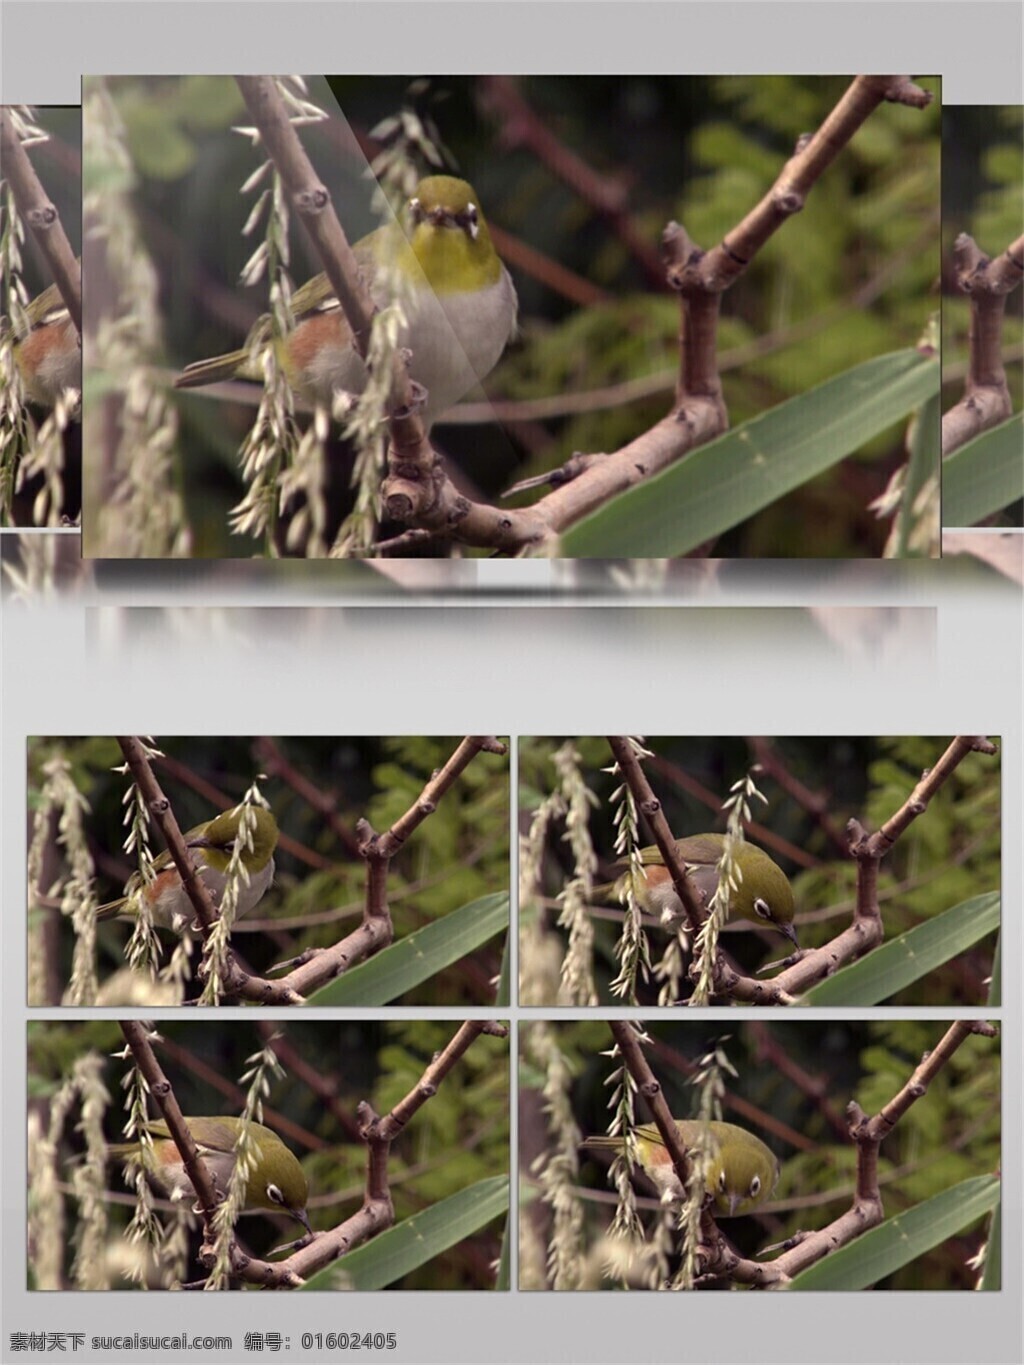 小鸟 树枝 上 观察 寻找 觅食 大自然 生态 视频 音效 实拍 高清 绿色 植物 鸟儿 视频音效